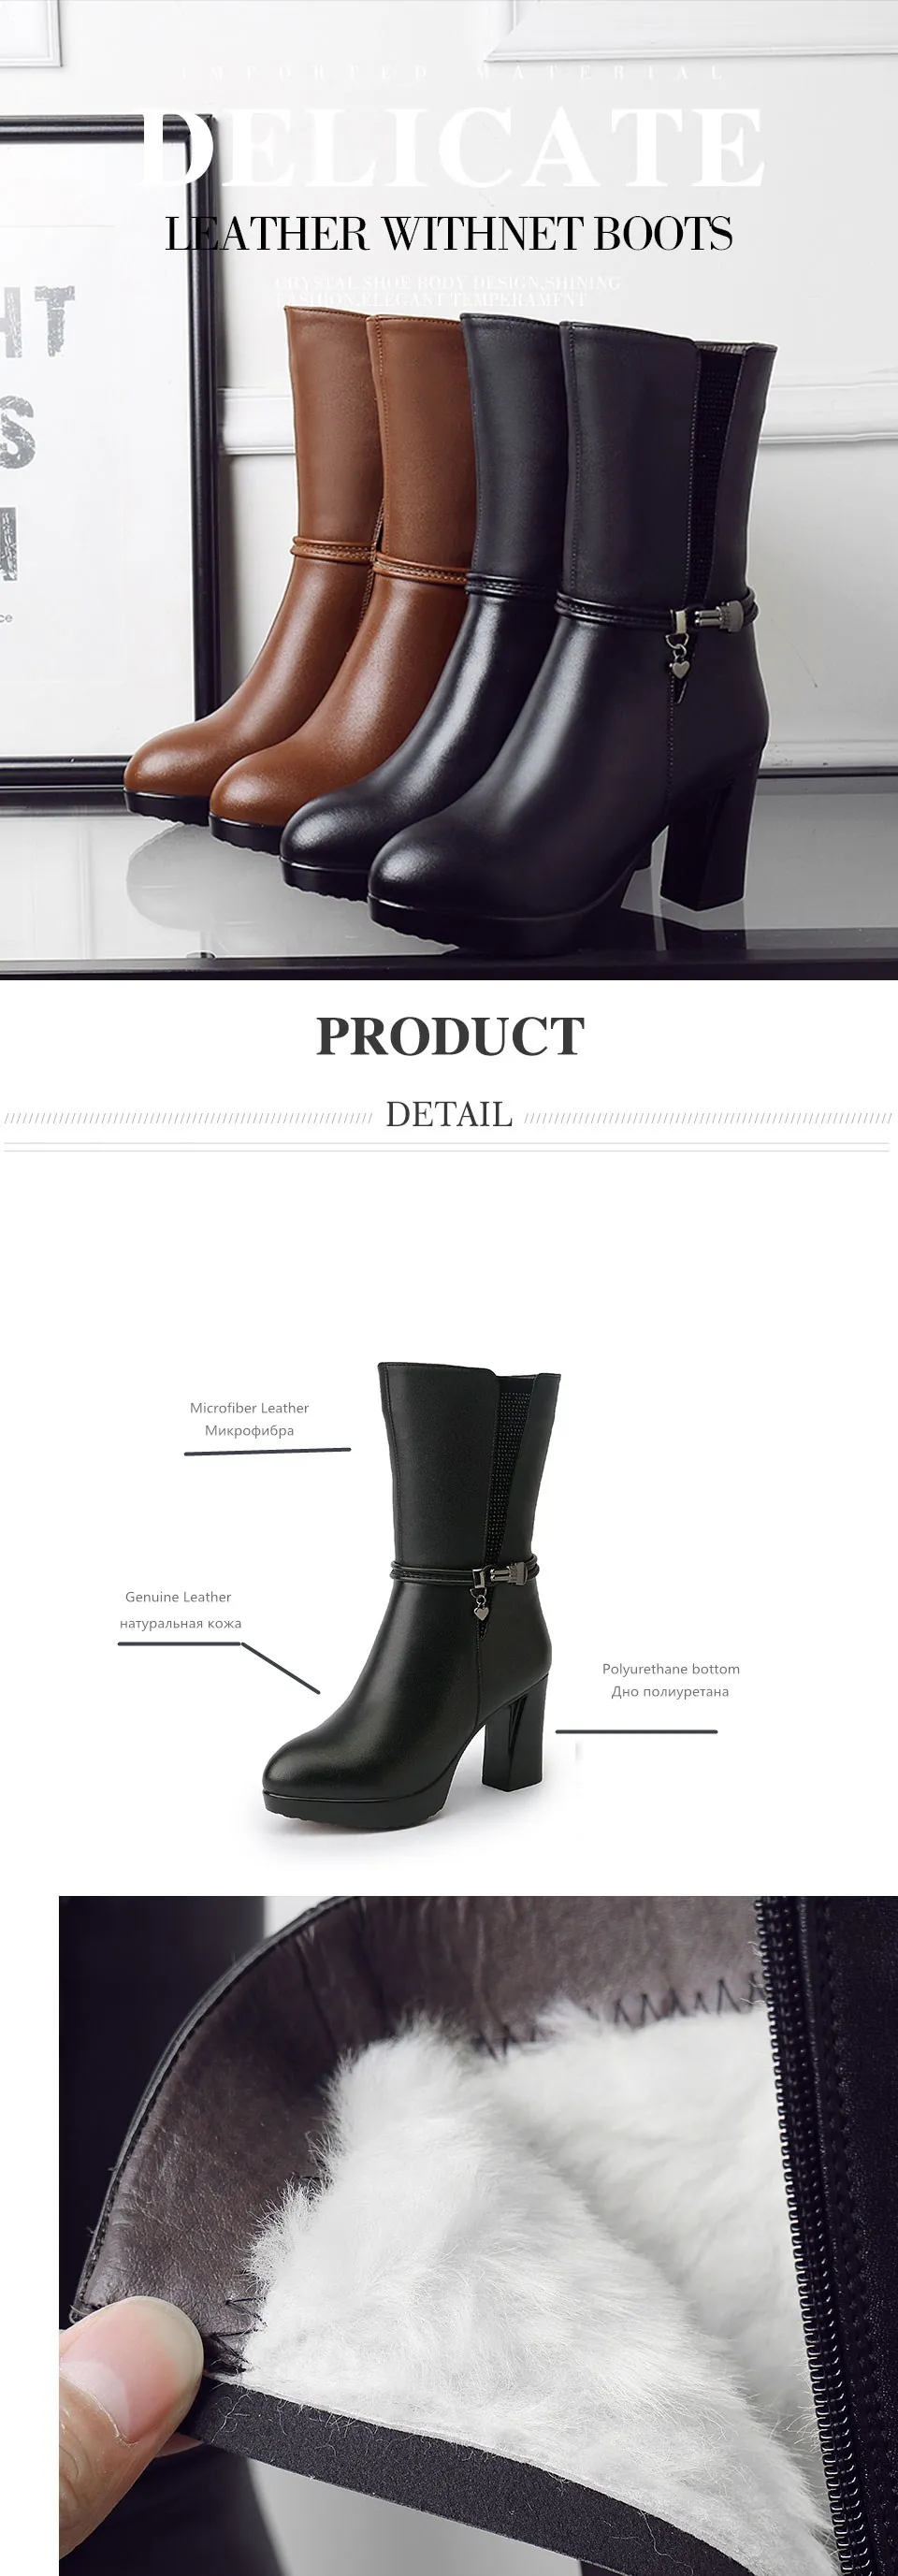 AIYUQI/2019 г. зимние женские ботинки из натуральной кожи, женские ботинки, ботинки-Австралийская Шерсть, размер 33, модные мотоботы со стразами